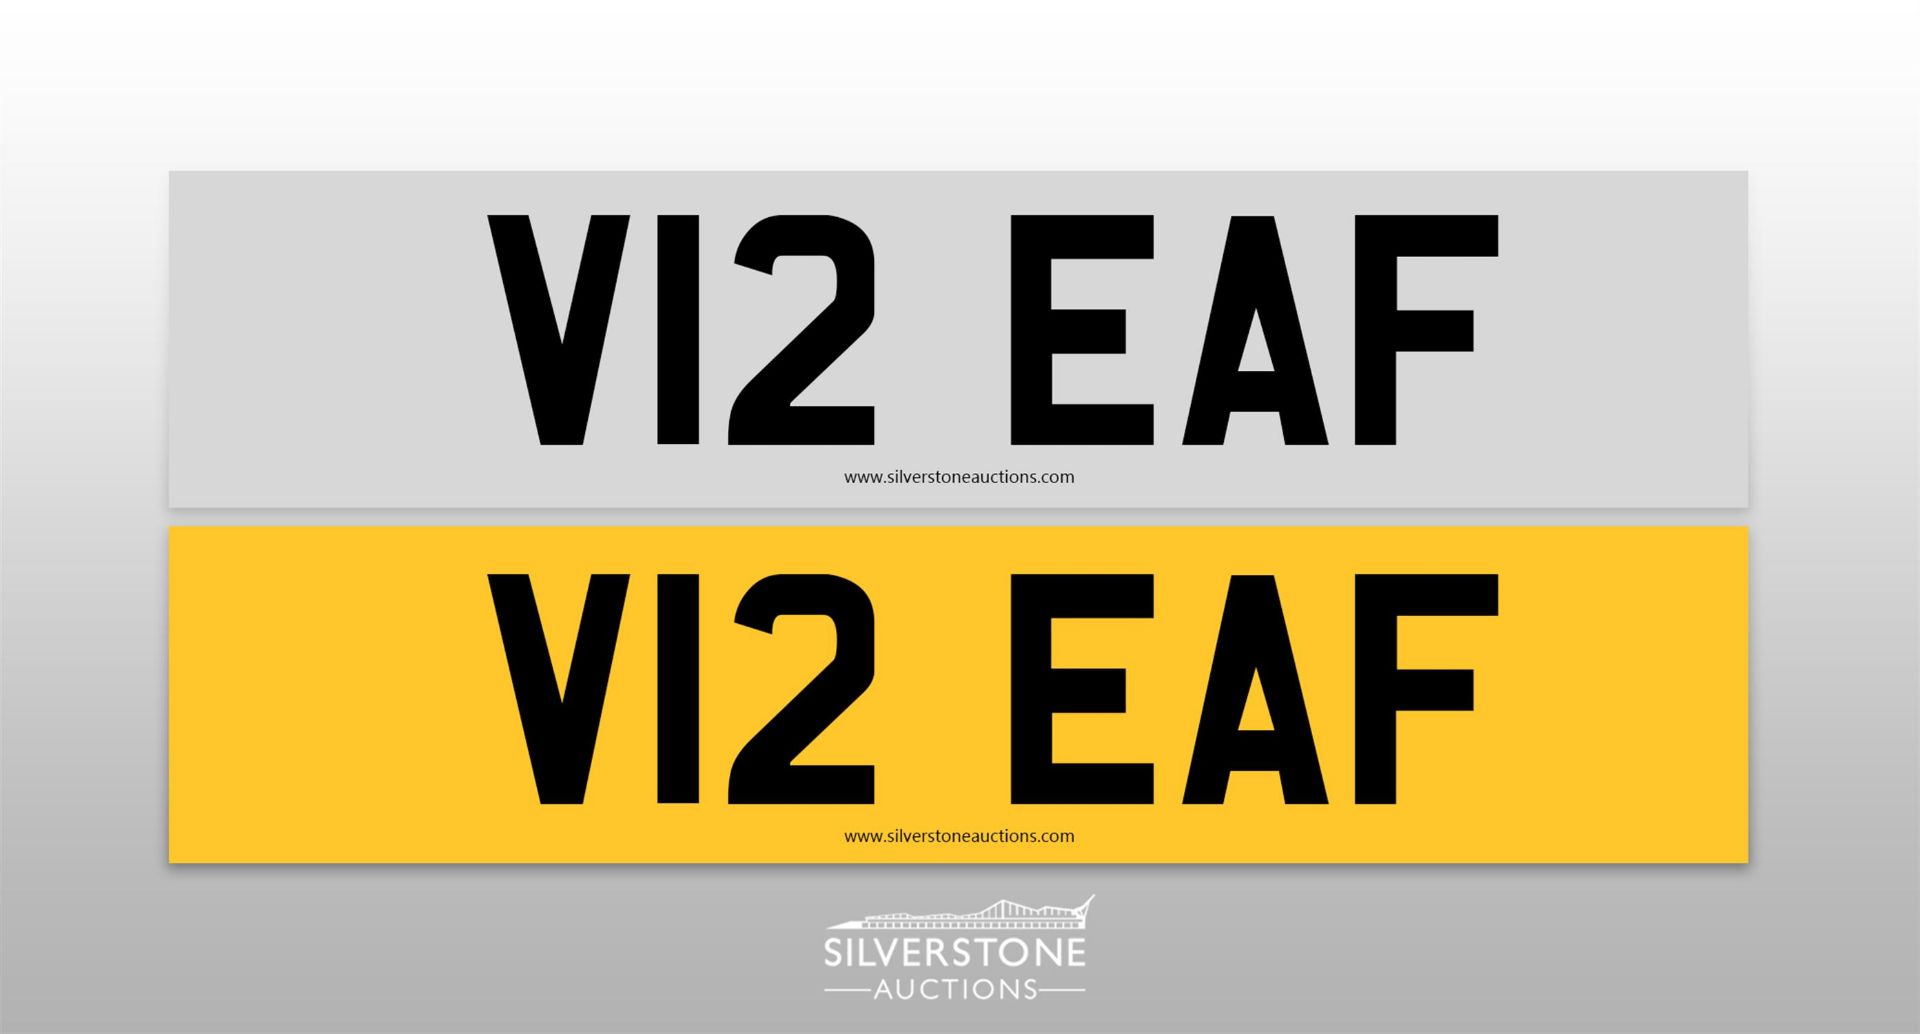 Registration Number V12 EAF - Image 2 of 2